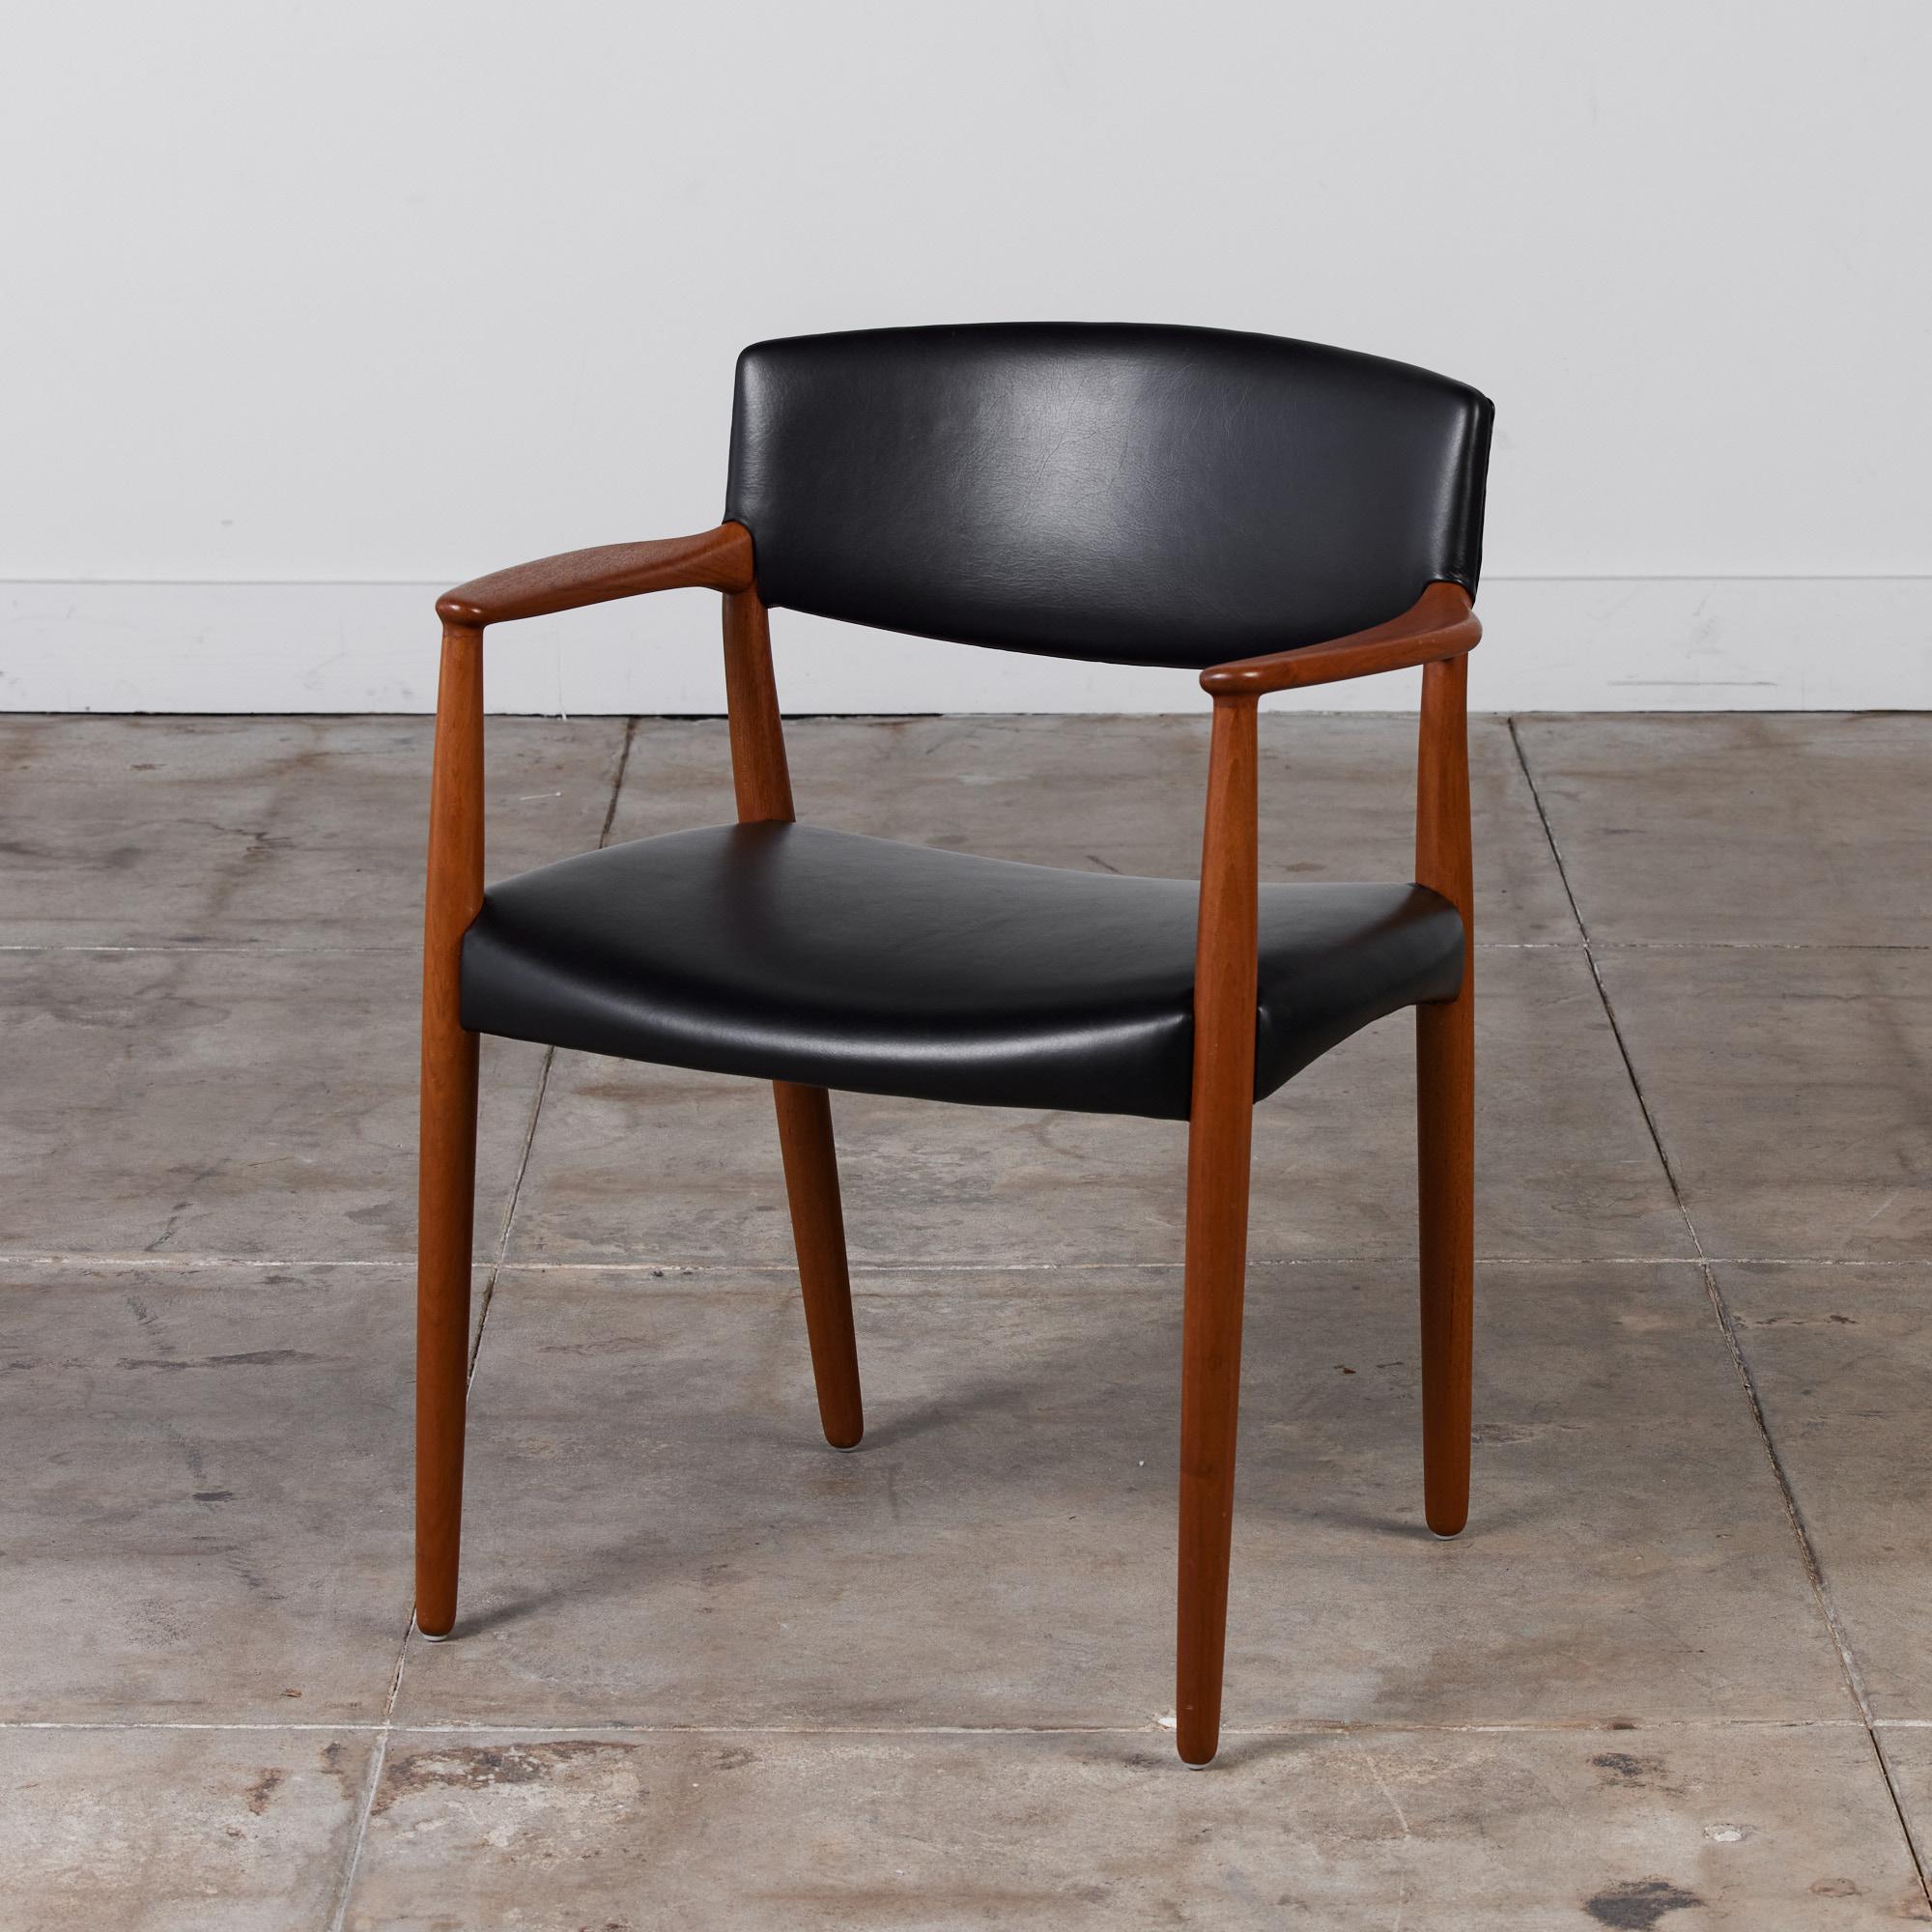 Rare fauteuil de Ejner Larsen & Aksel Bender Madsen pour Willy Beck, c.1950s, Danemark. La chaise est composée d'un cadre en teck massif et d'une assise et d'un dossier larges et rembourrés en cuir noir.

Dimensions : 25